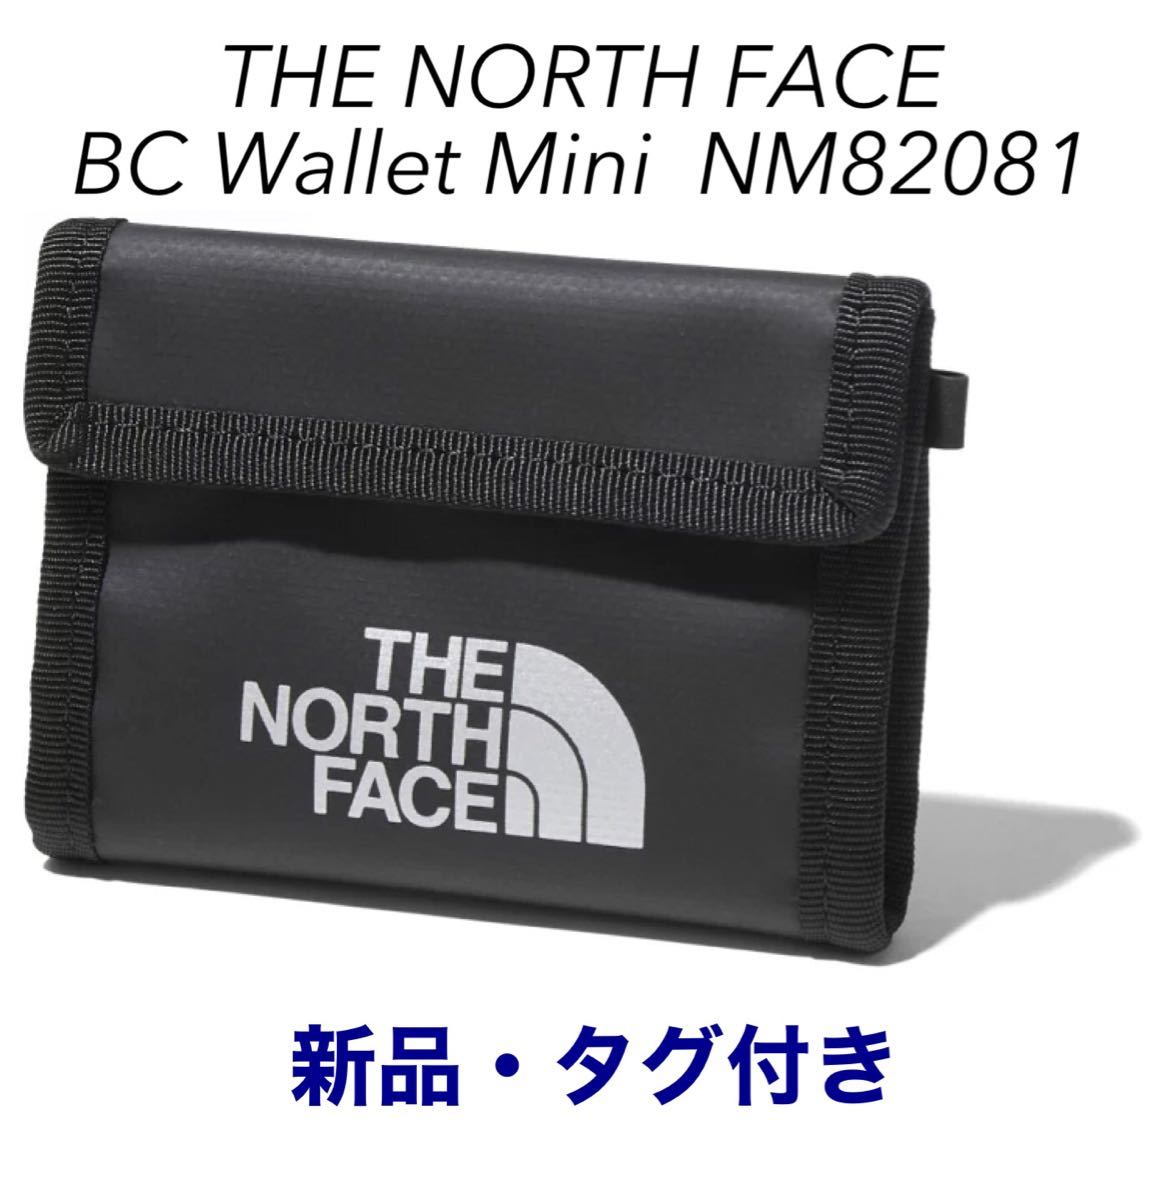 THE NORTH FACE BC Wallet Mini 財布 ノースフェイス BCワレットミニ NM82081 Kブラック